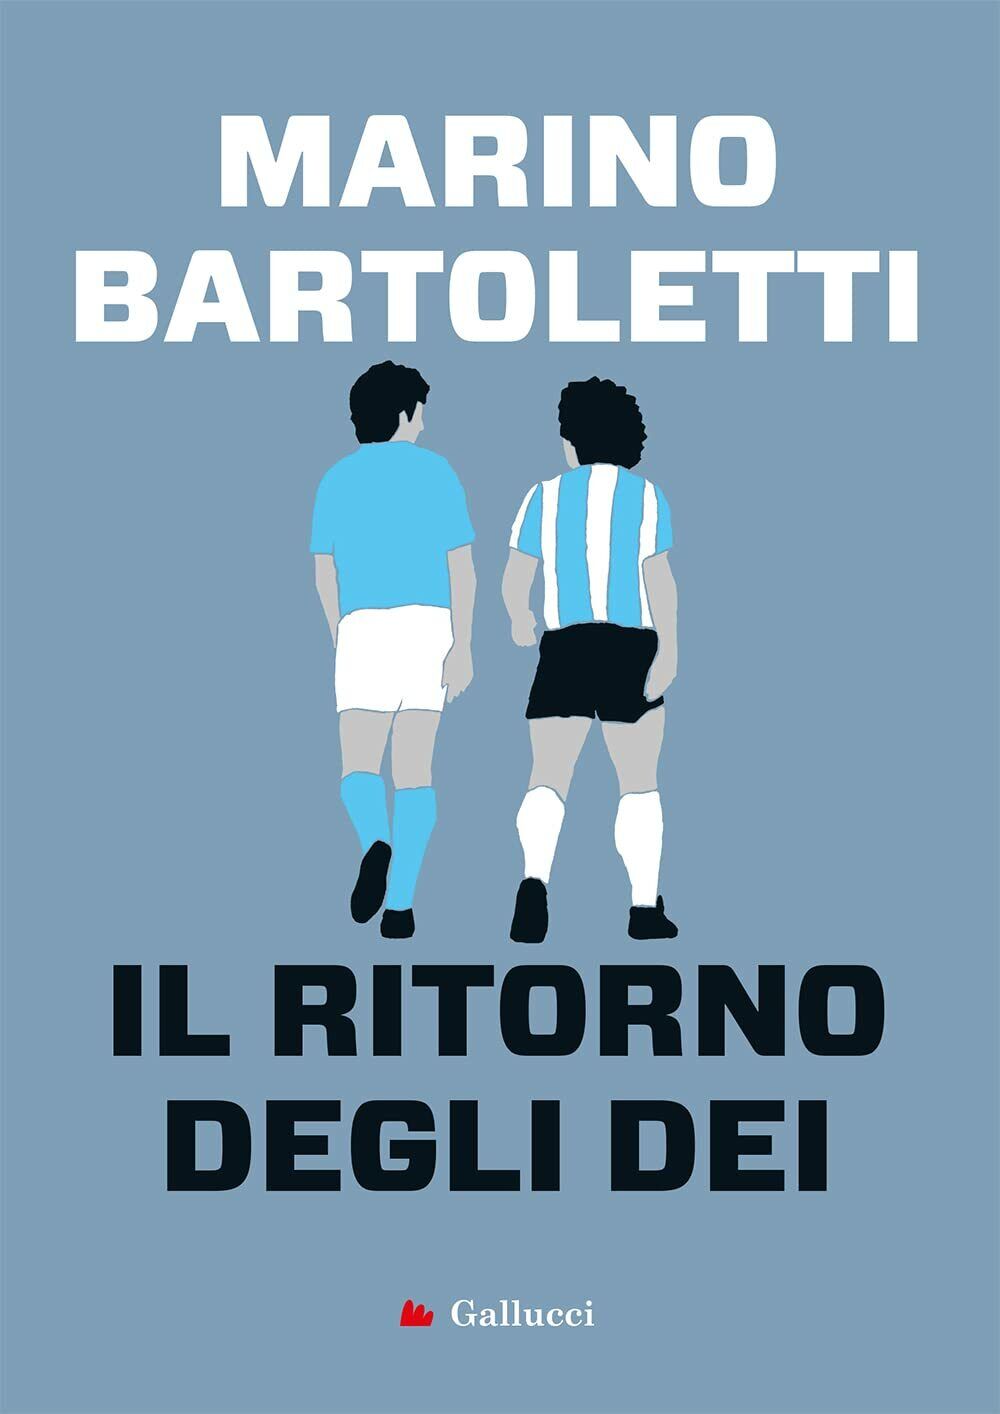 Il ritorno degli dei - Marino Bartoletti - Gallucci, 2021